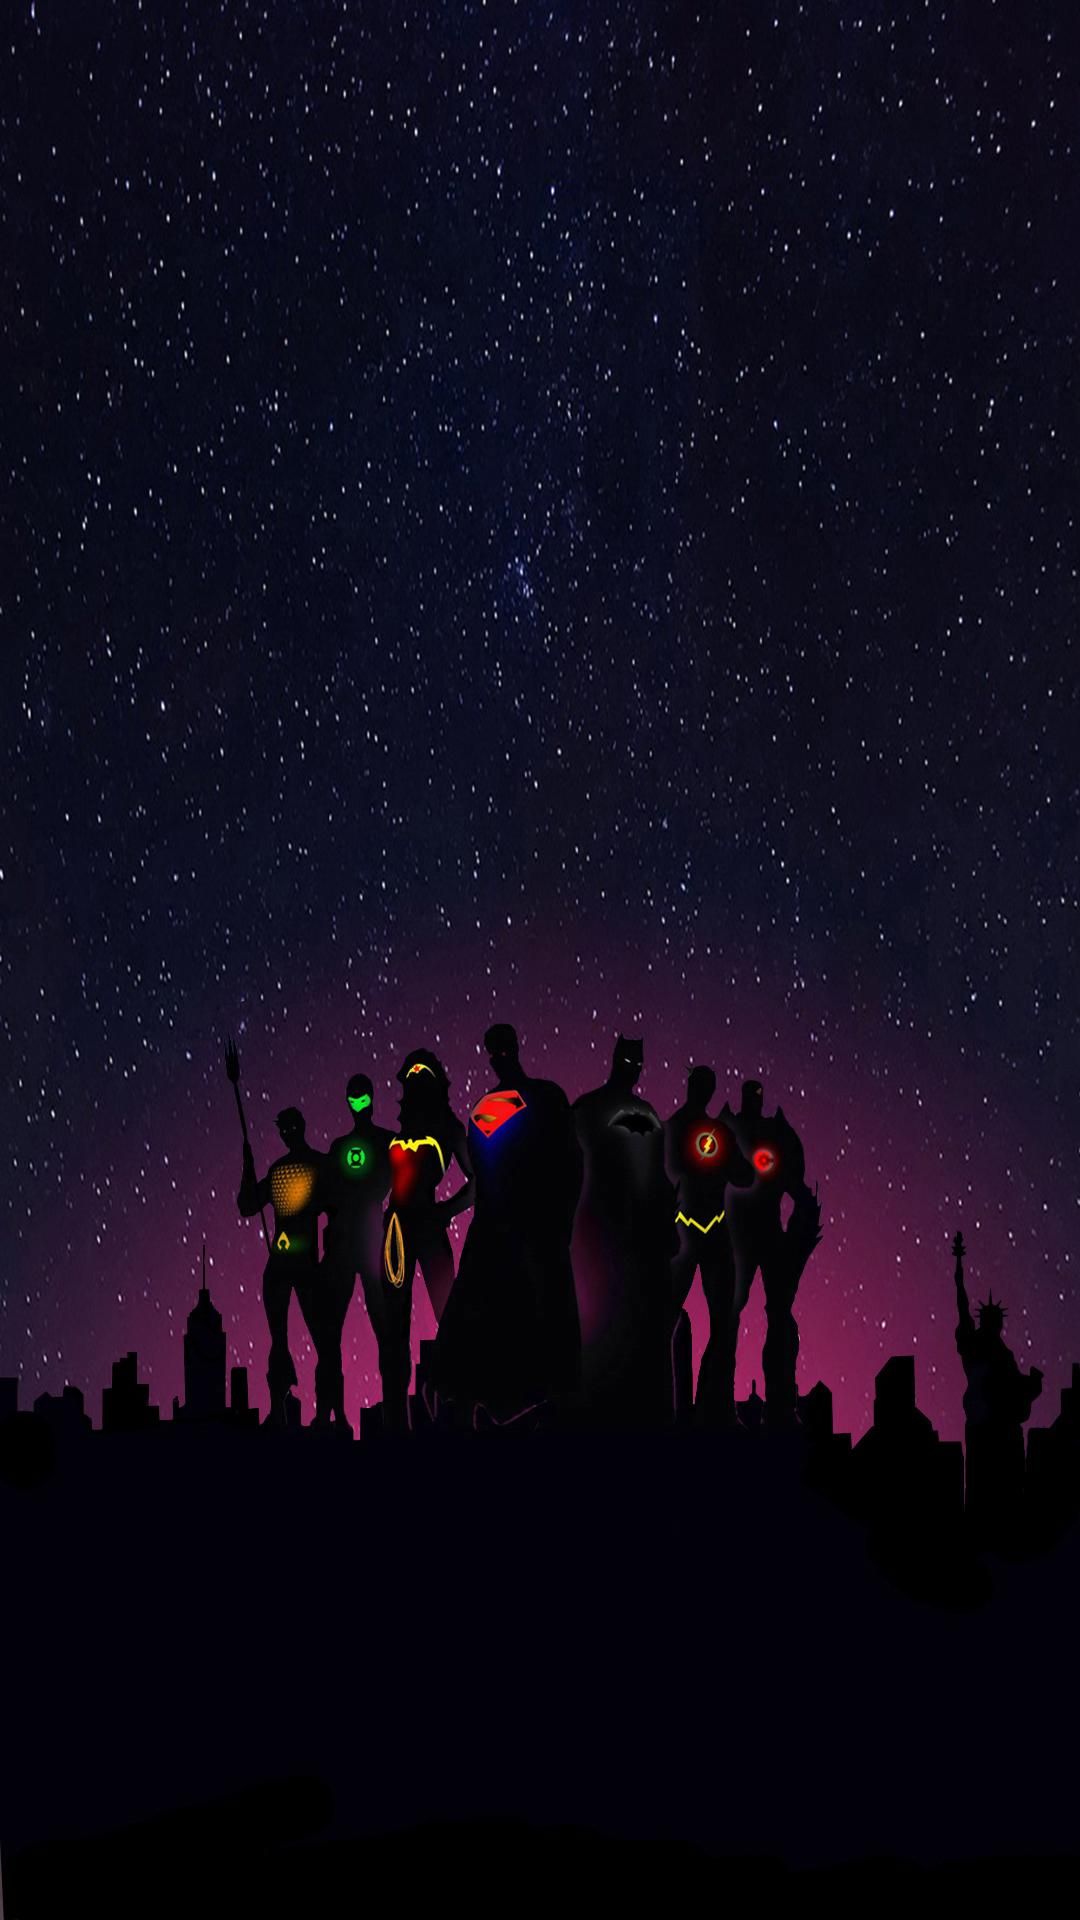 Justice League. Dc comics wallpaper, Superman wallpaper, Justice league art